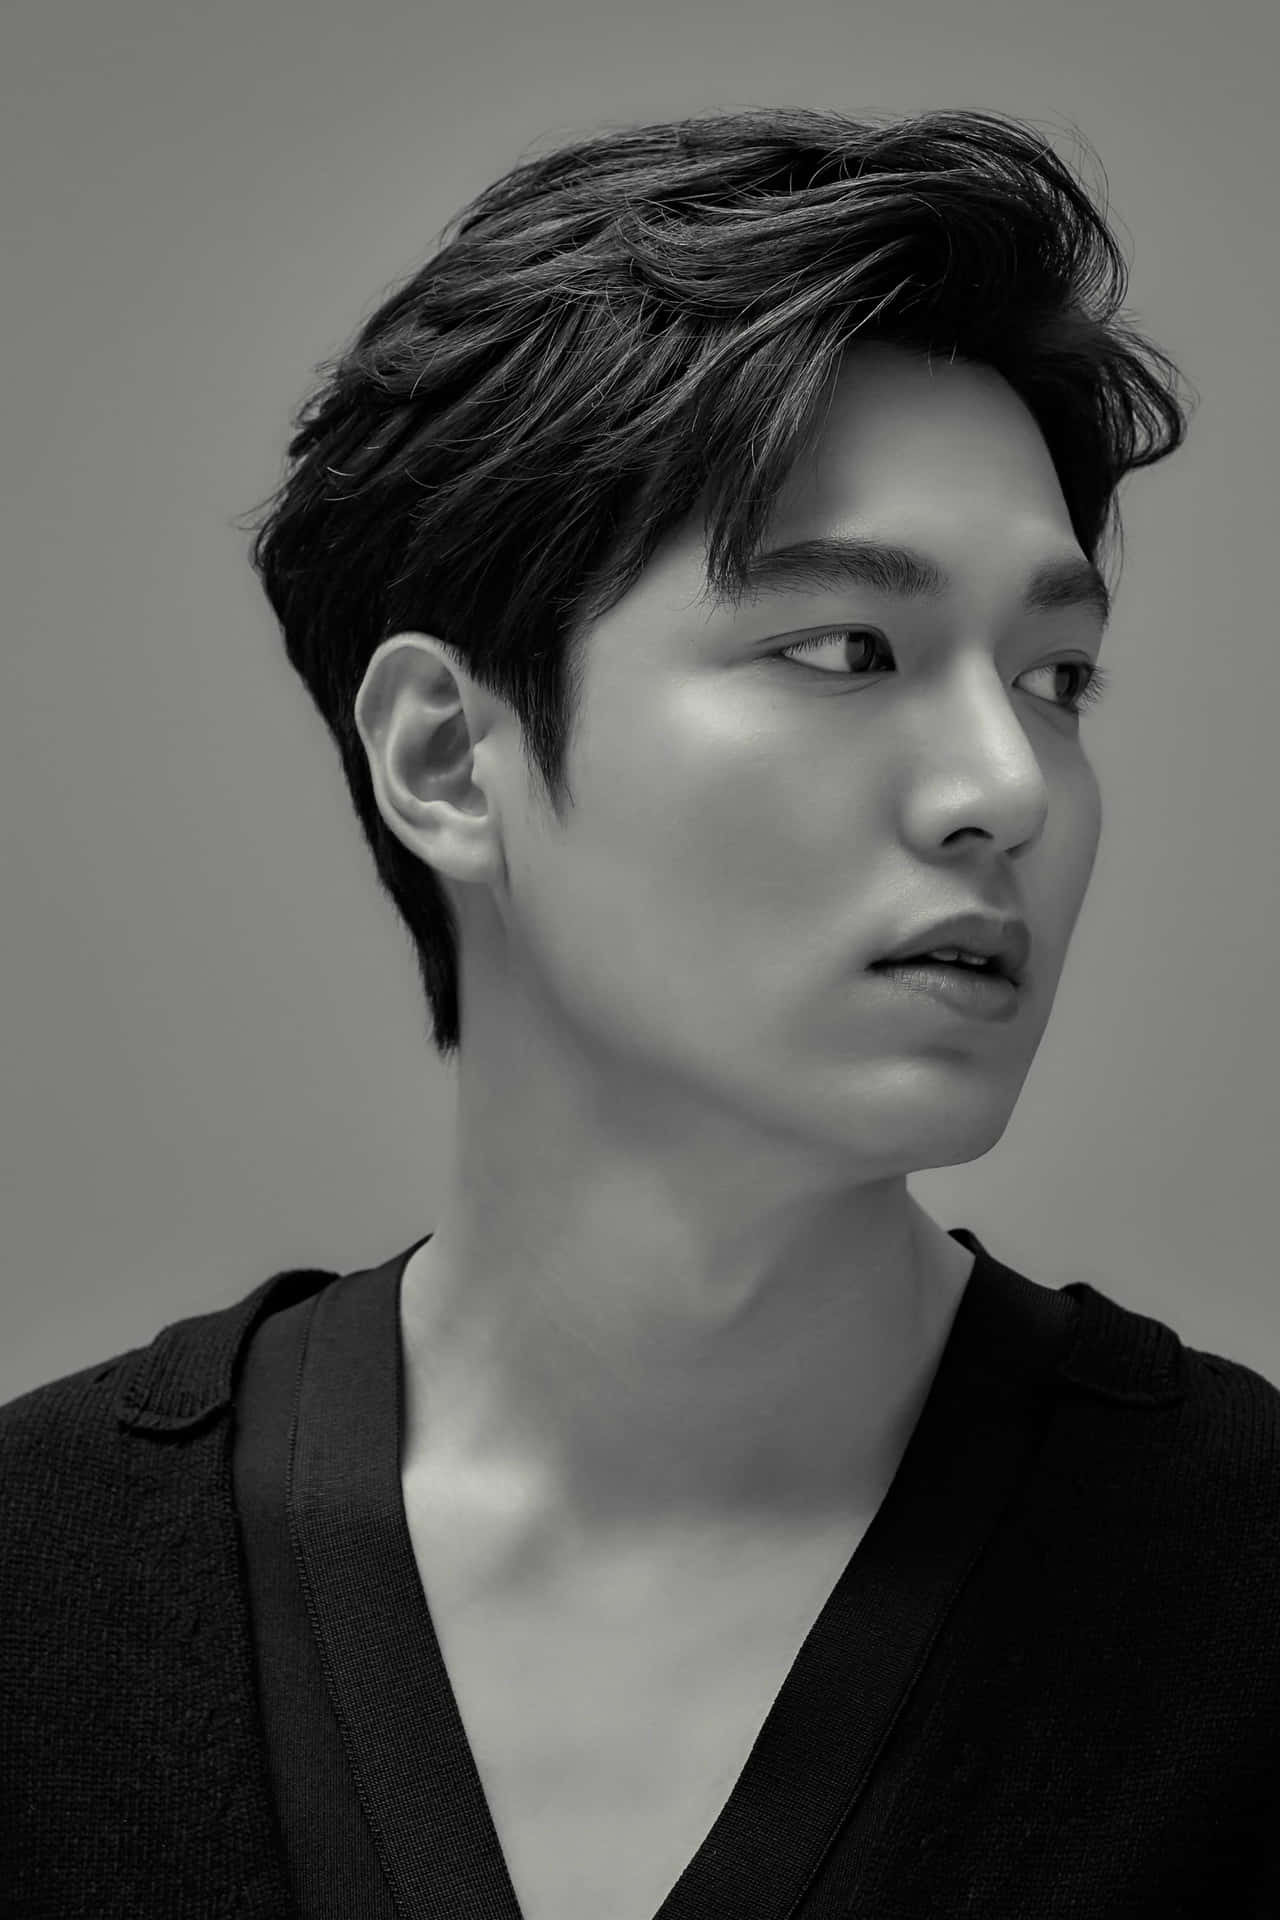 Lee Min Ho South Korean Actor Singer Background